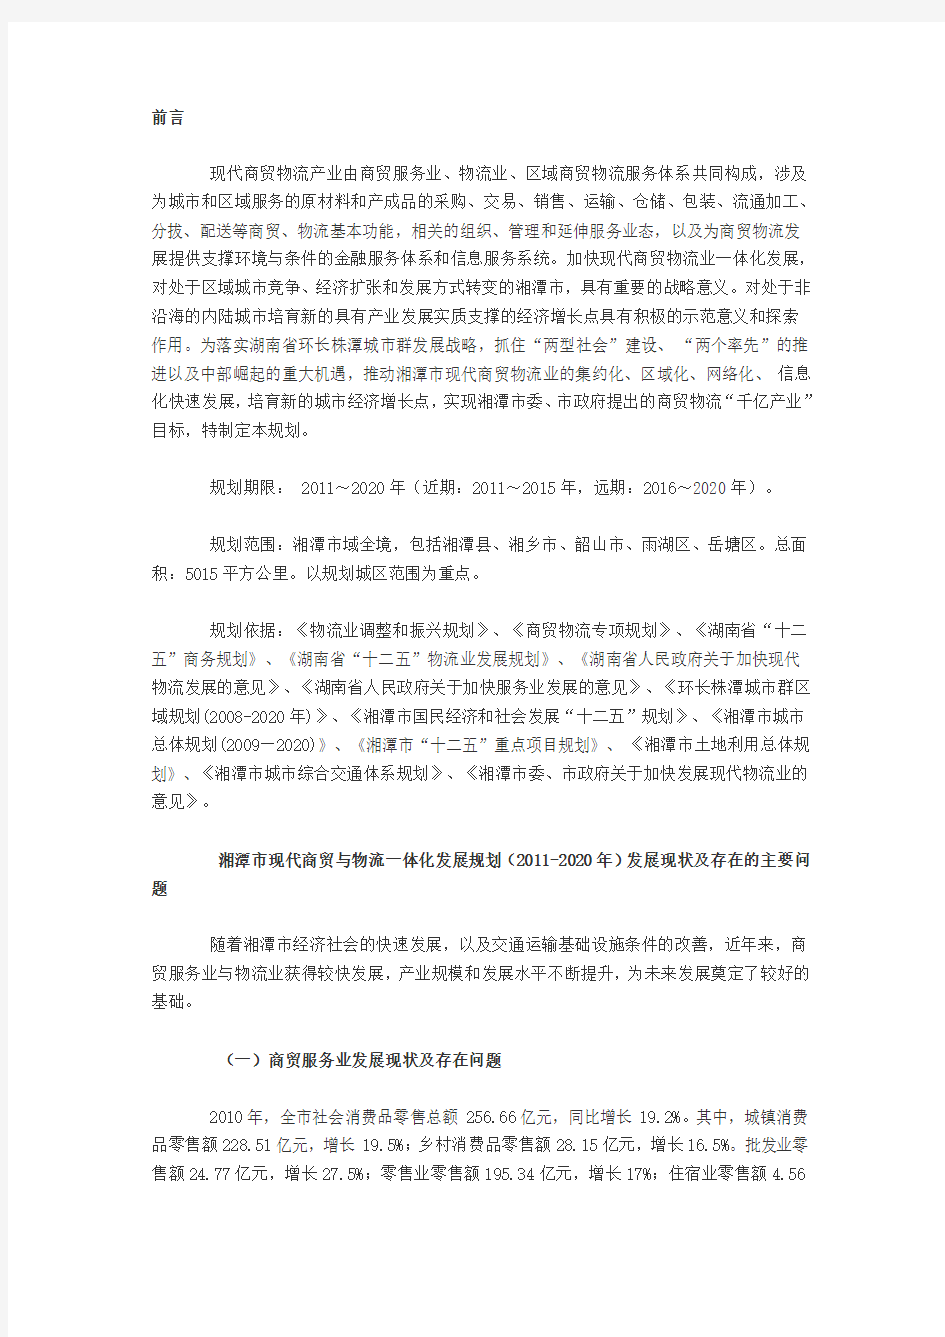 湘潭市现代商贸与物流一体化发展规划(2011-2020年)